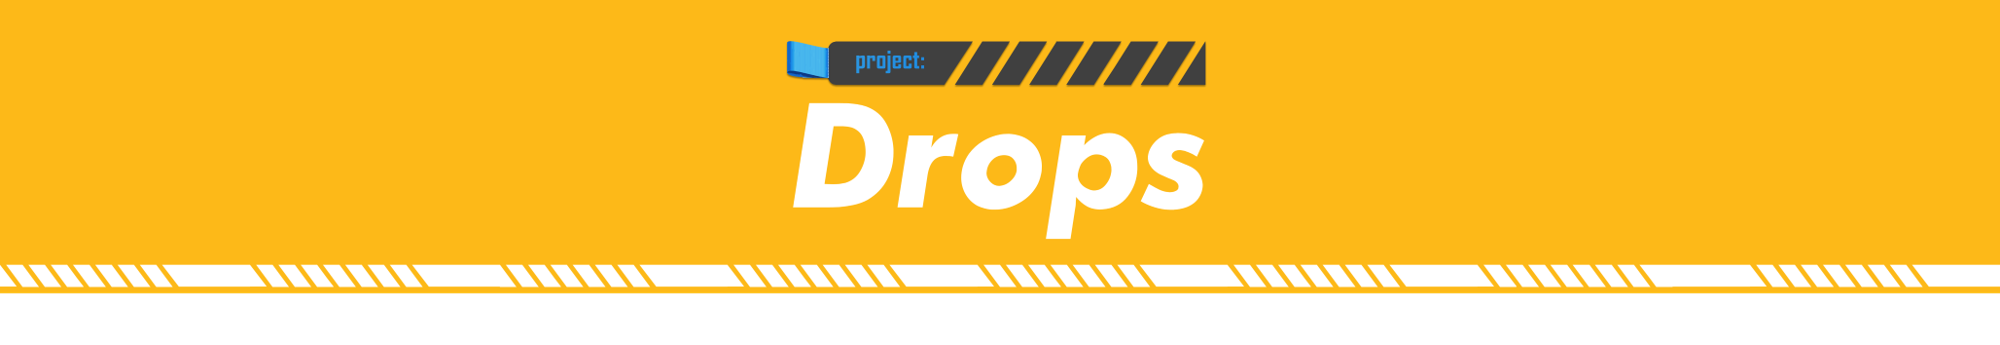 Project: Drops